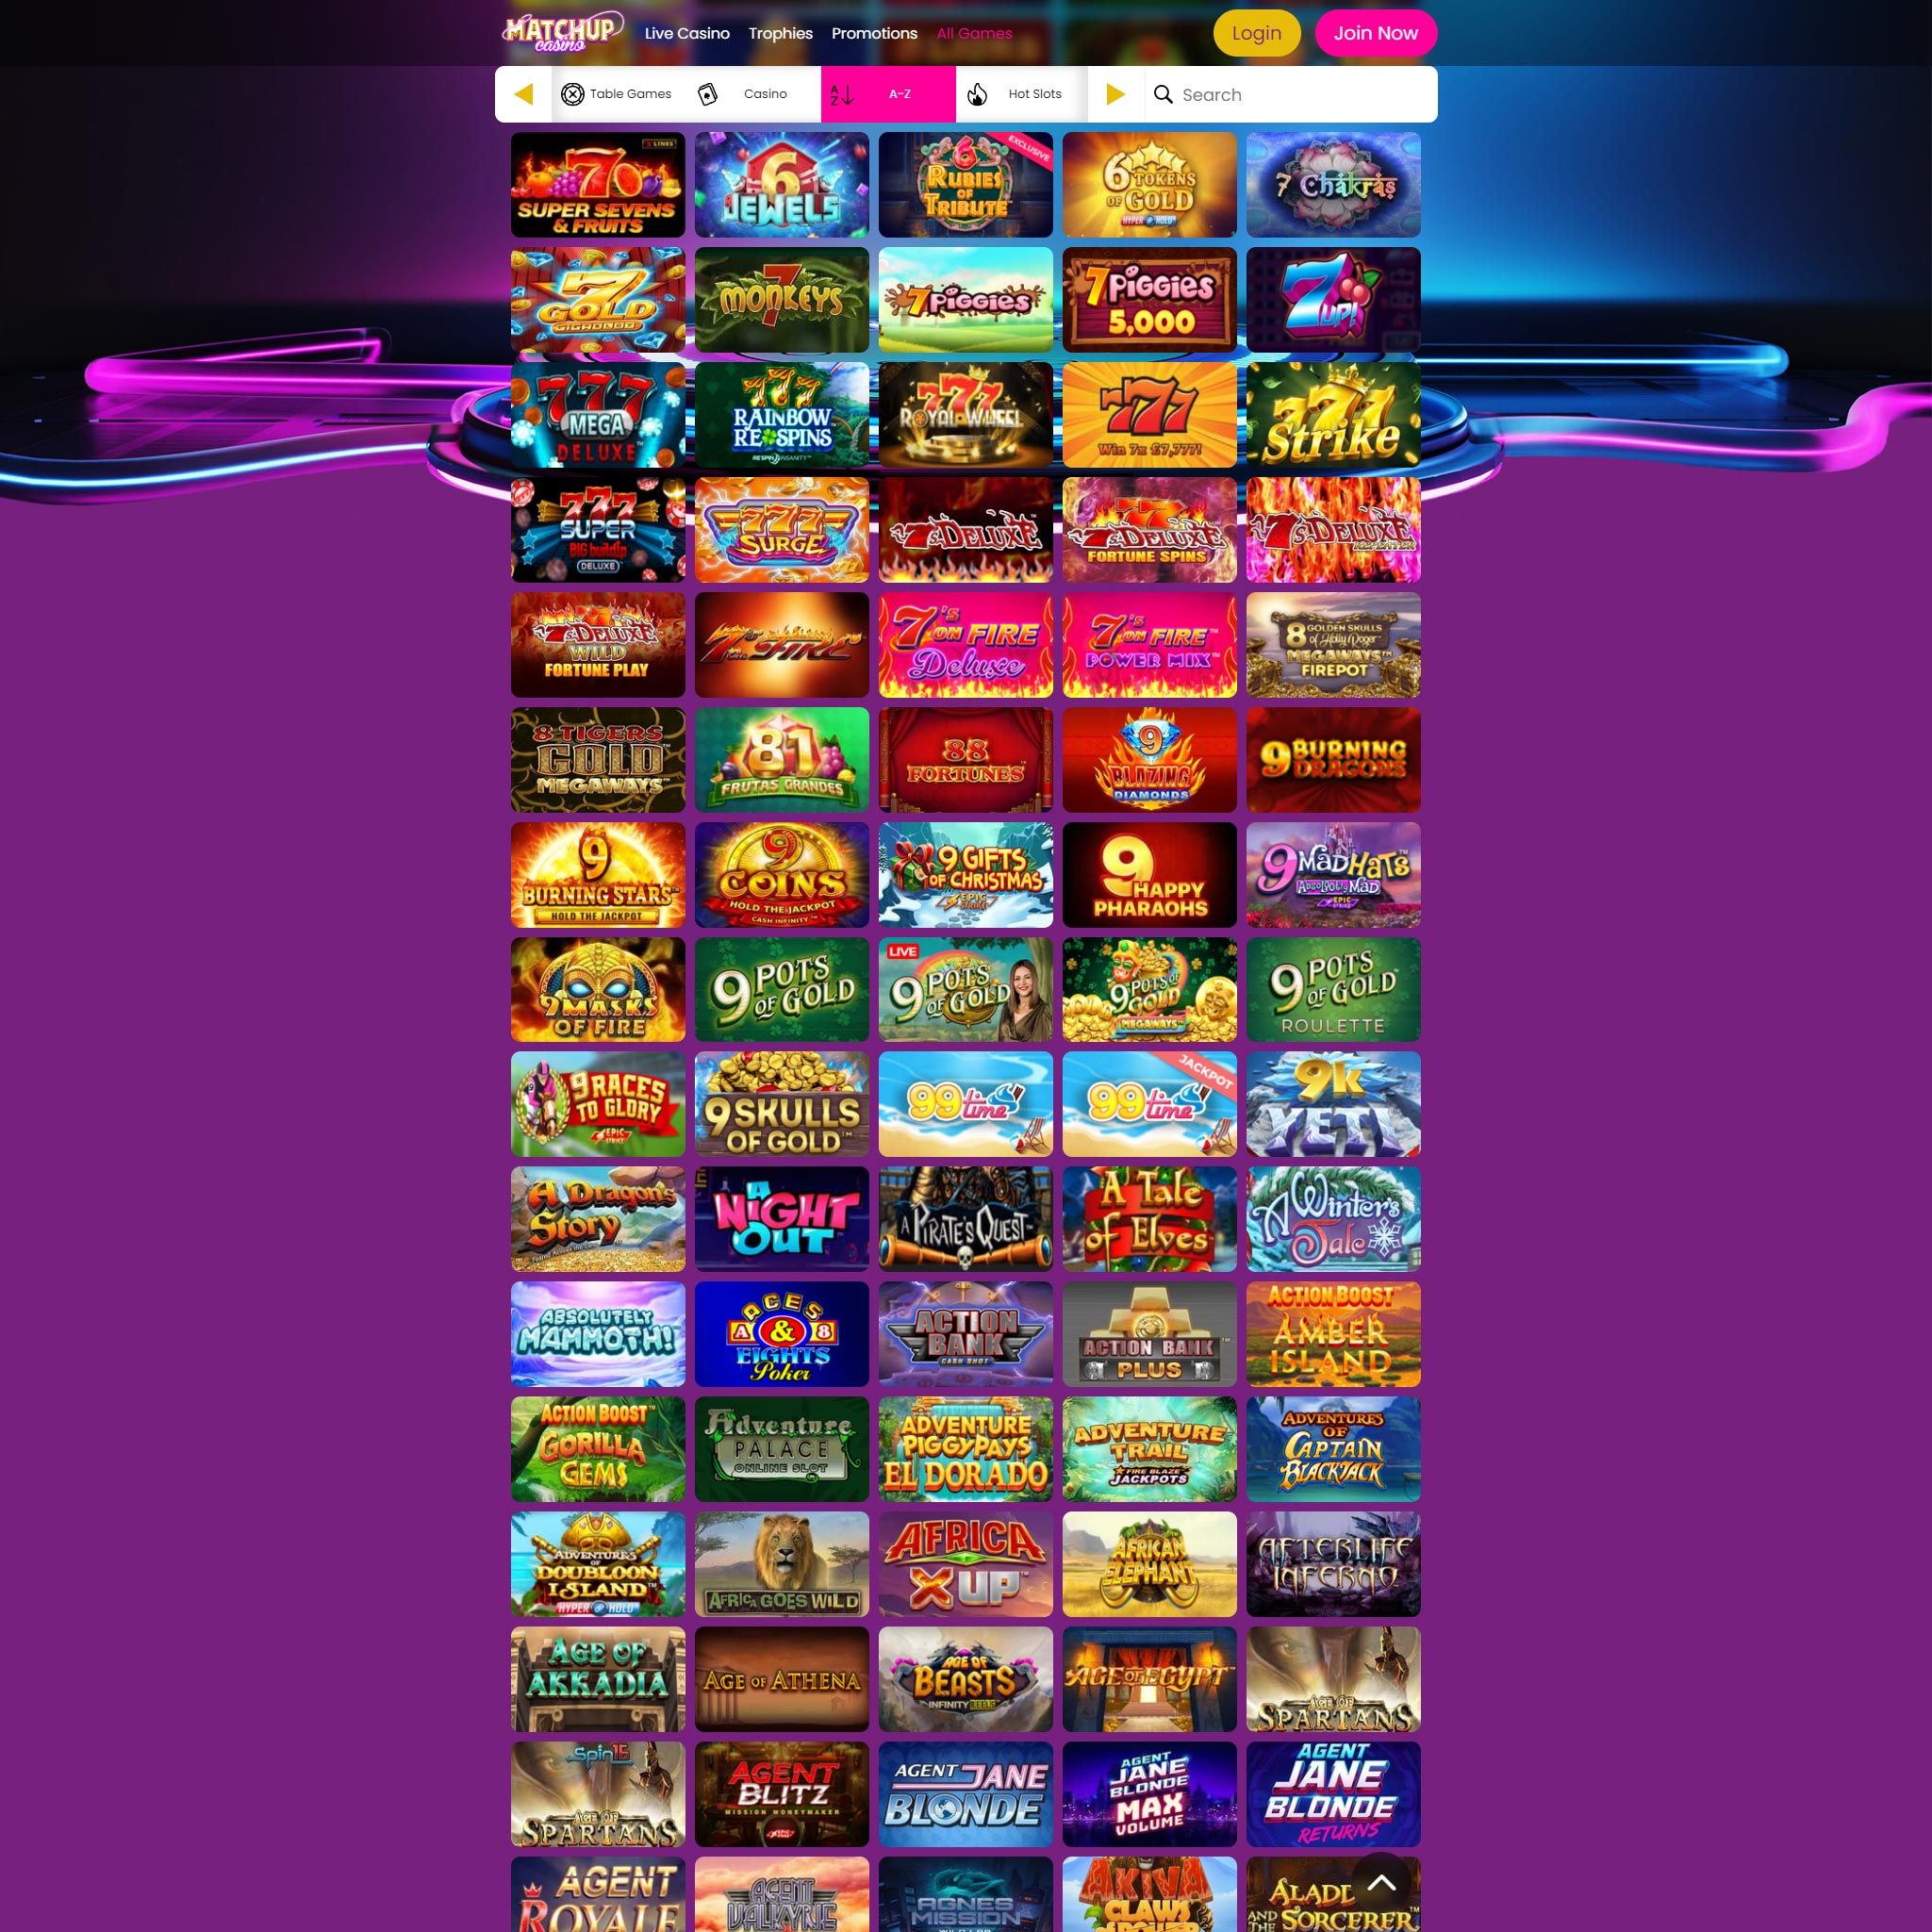 Matchup Casino full games catalogue